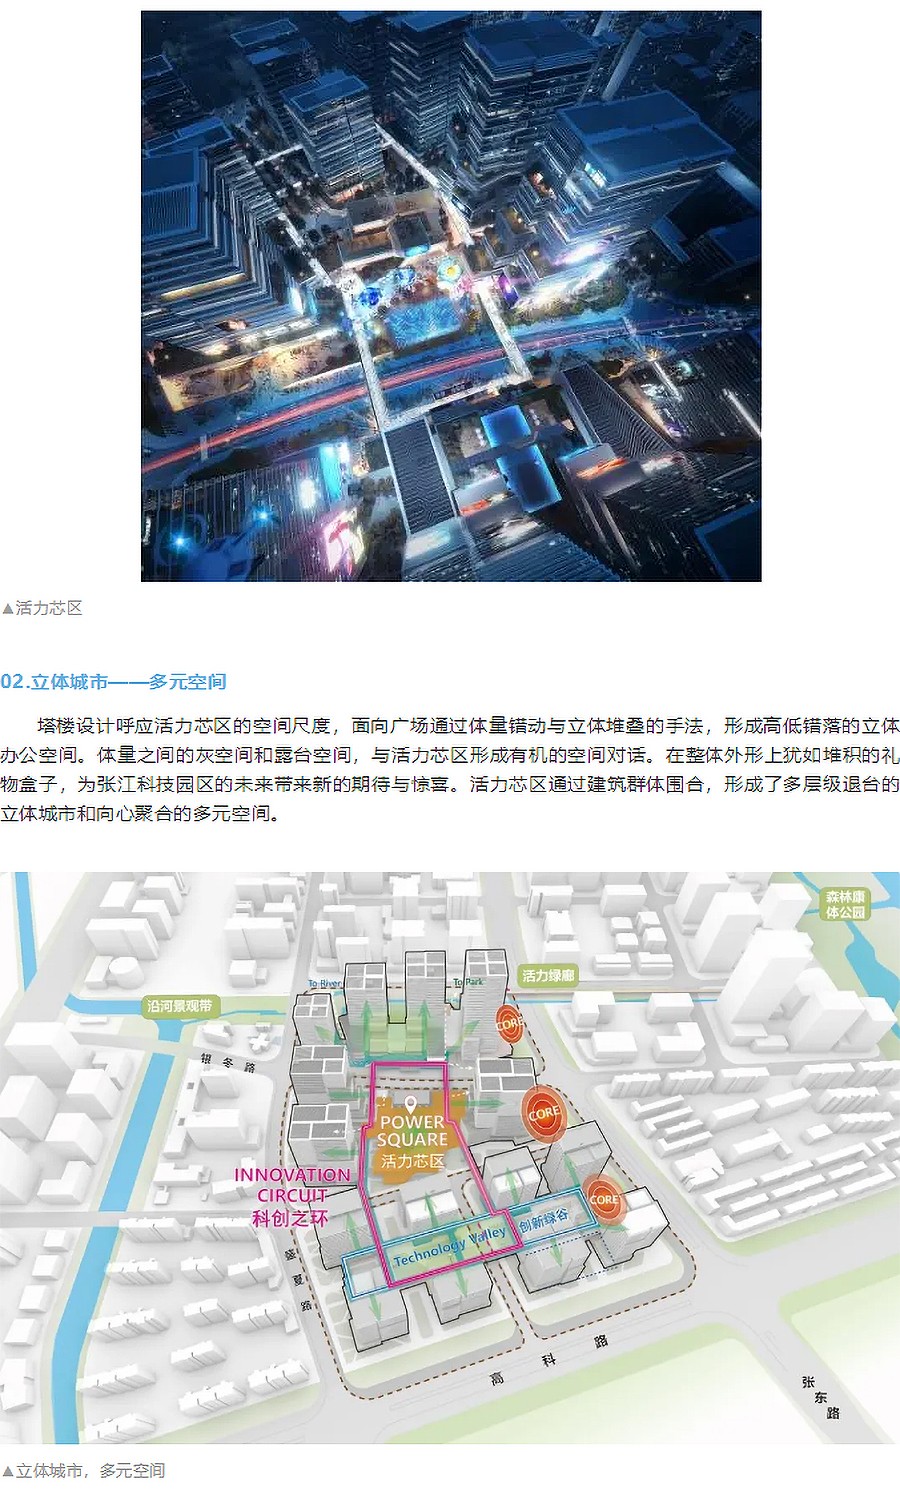 【2023REARD金奖作品_株式会社日建设计】上海集成电路设计产业园5-1项目_04.jpg